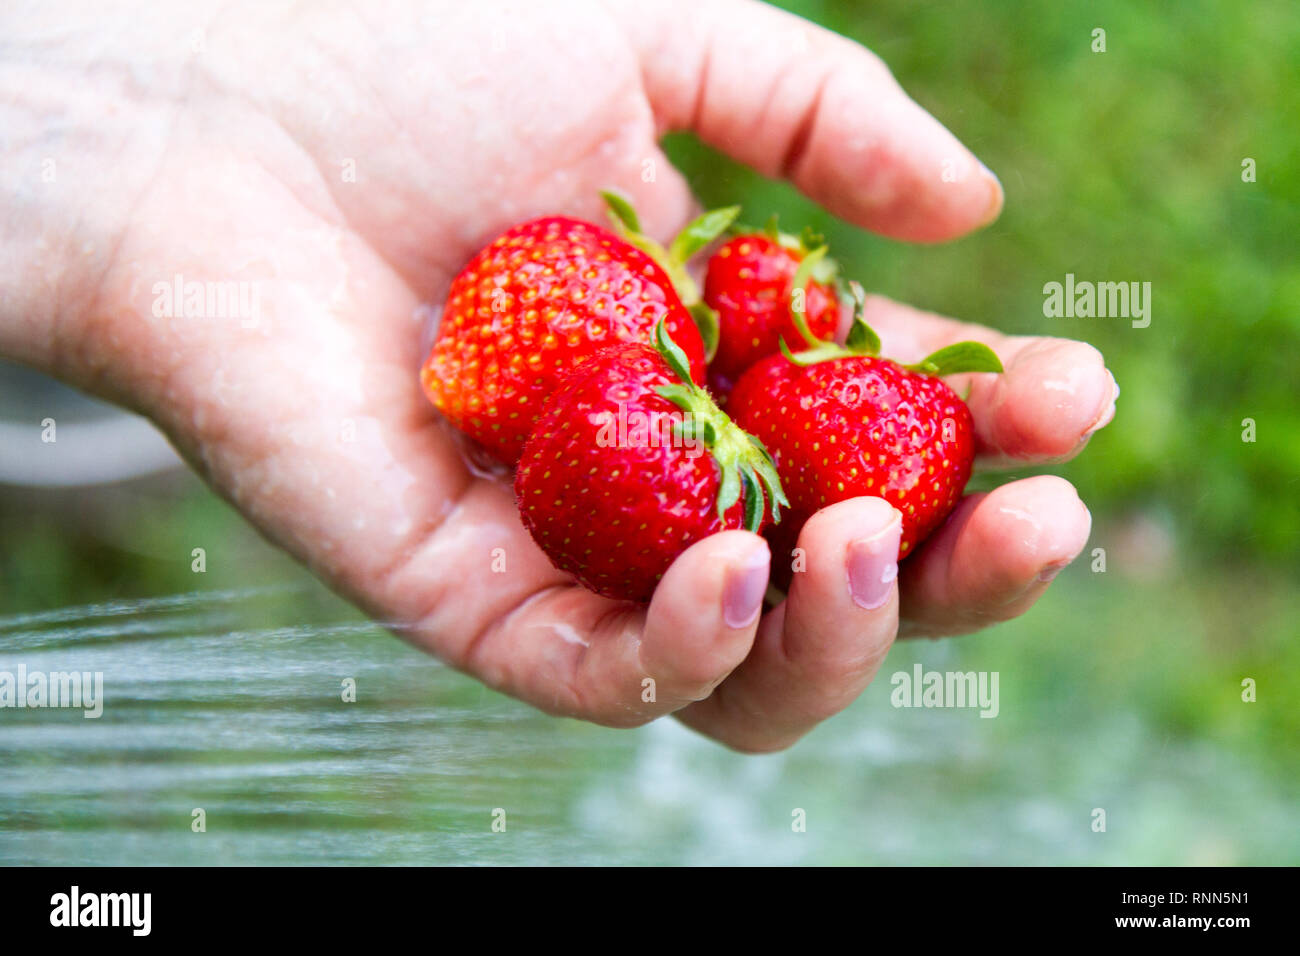 Un puñado de fresas orgánicas madura ser lavado con un haz de agua Foto de stock